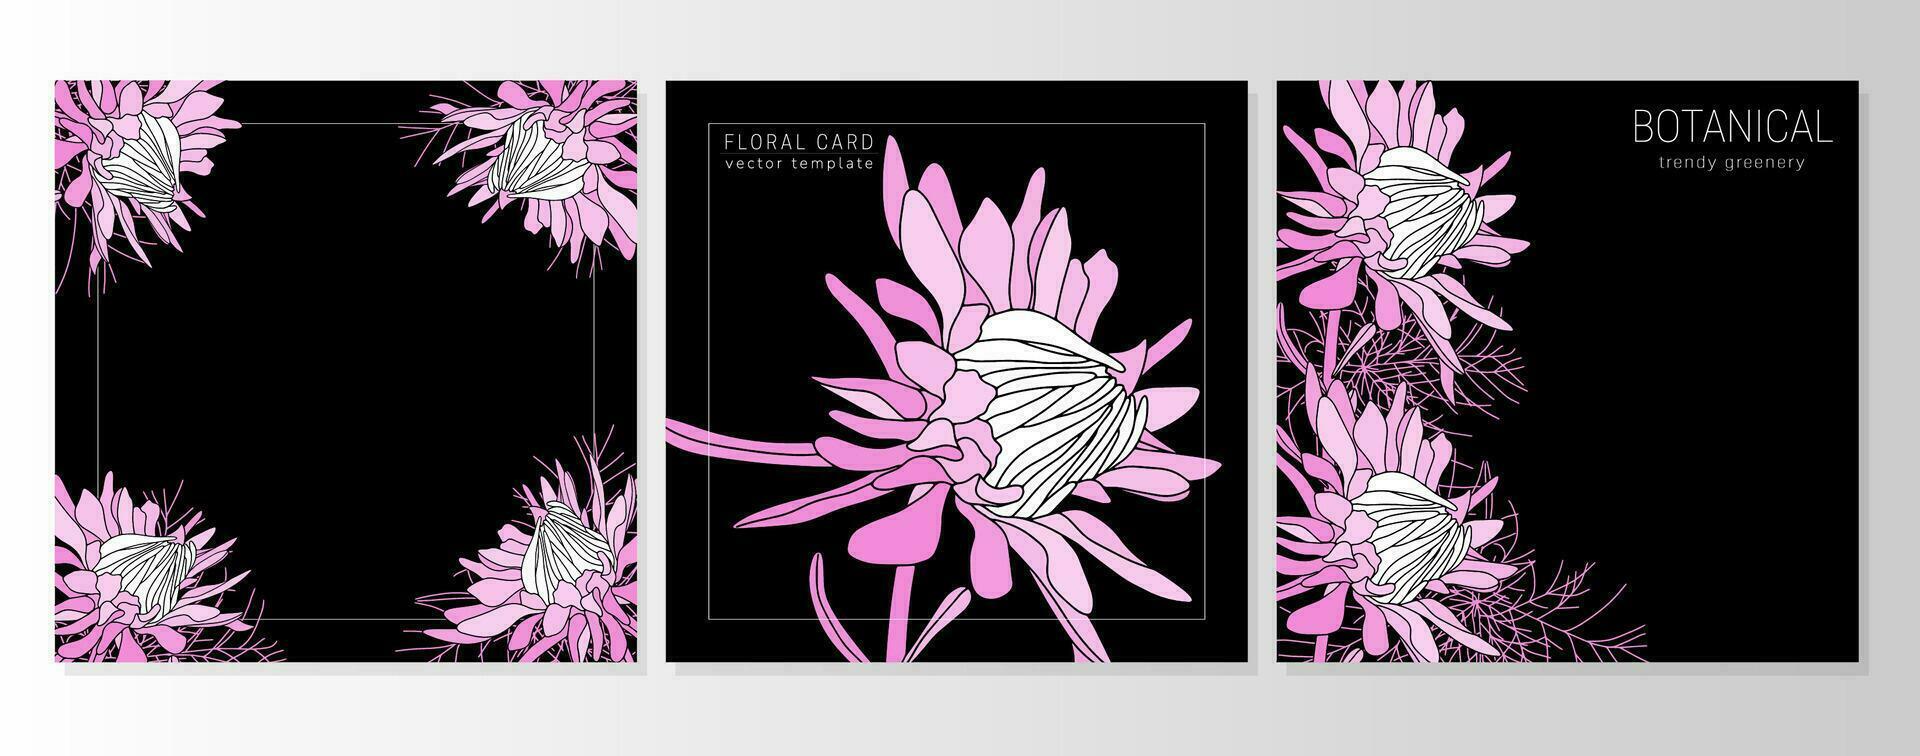 ensemble de salutation floral cartes, botanique arrière-plans, couvertures avec tomber rose asters, marguerites vecteur